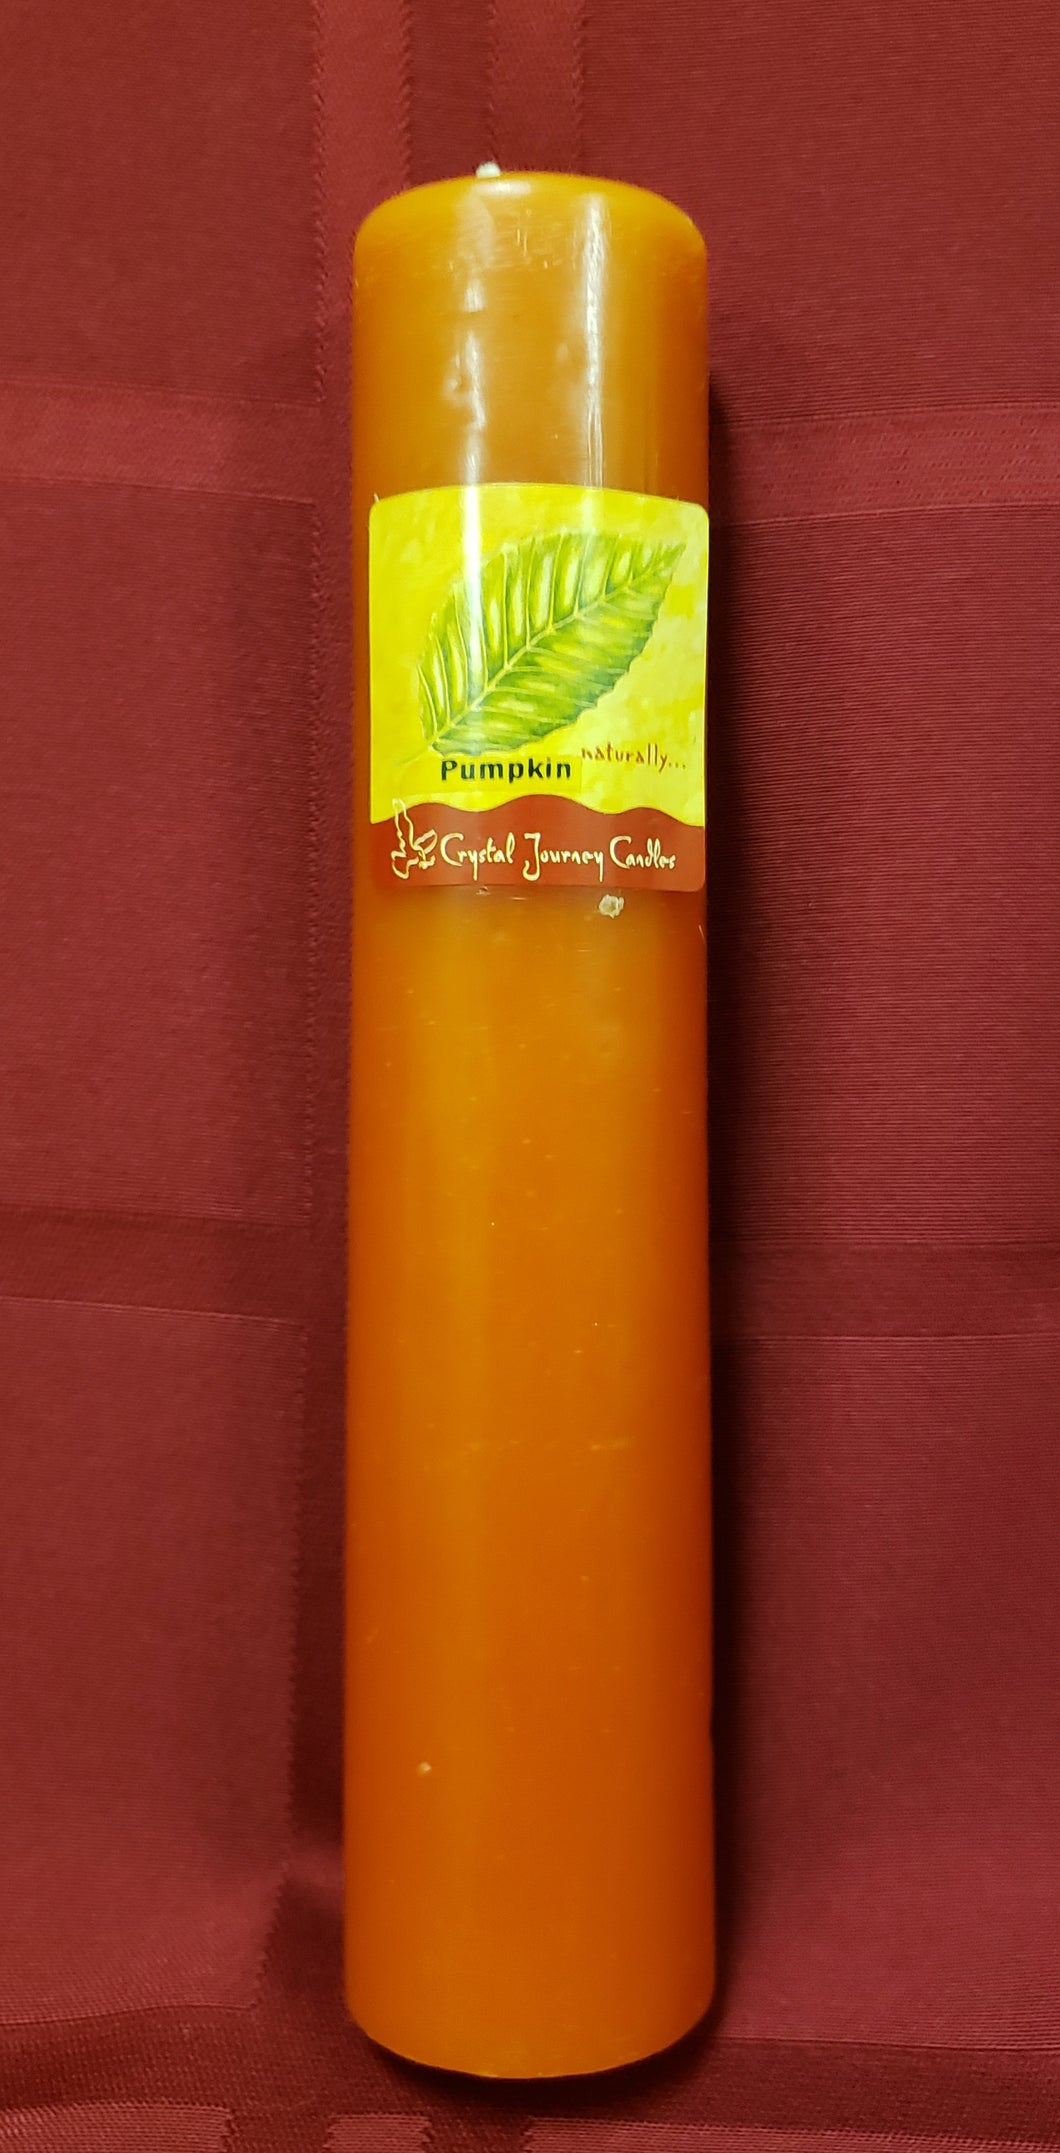 Pumpkin Pillar Candle - NOW 20% OFF!